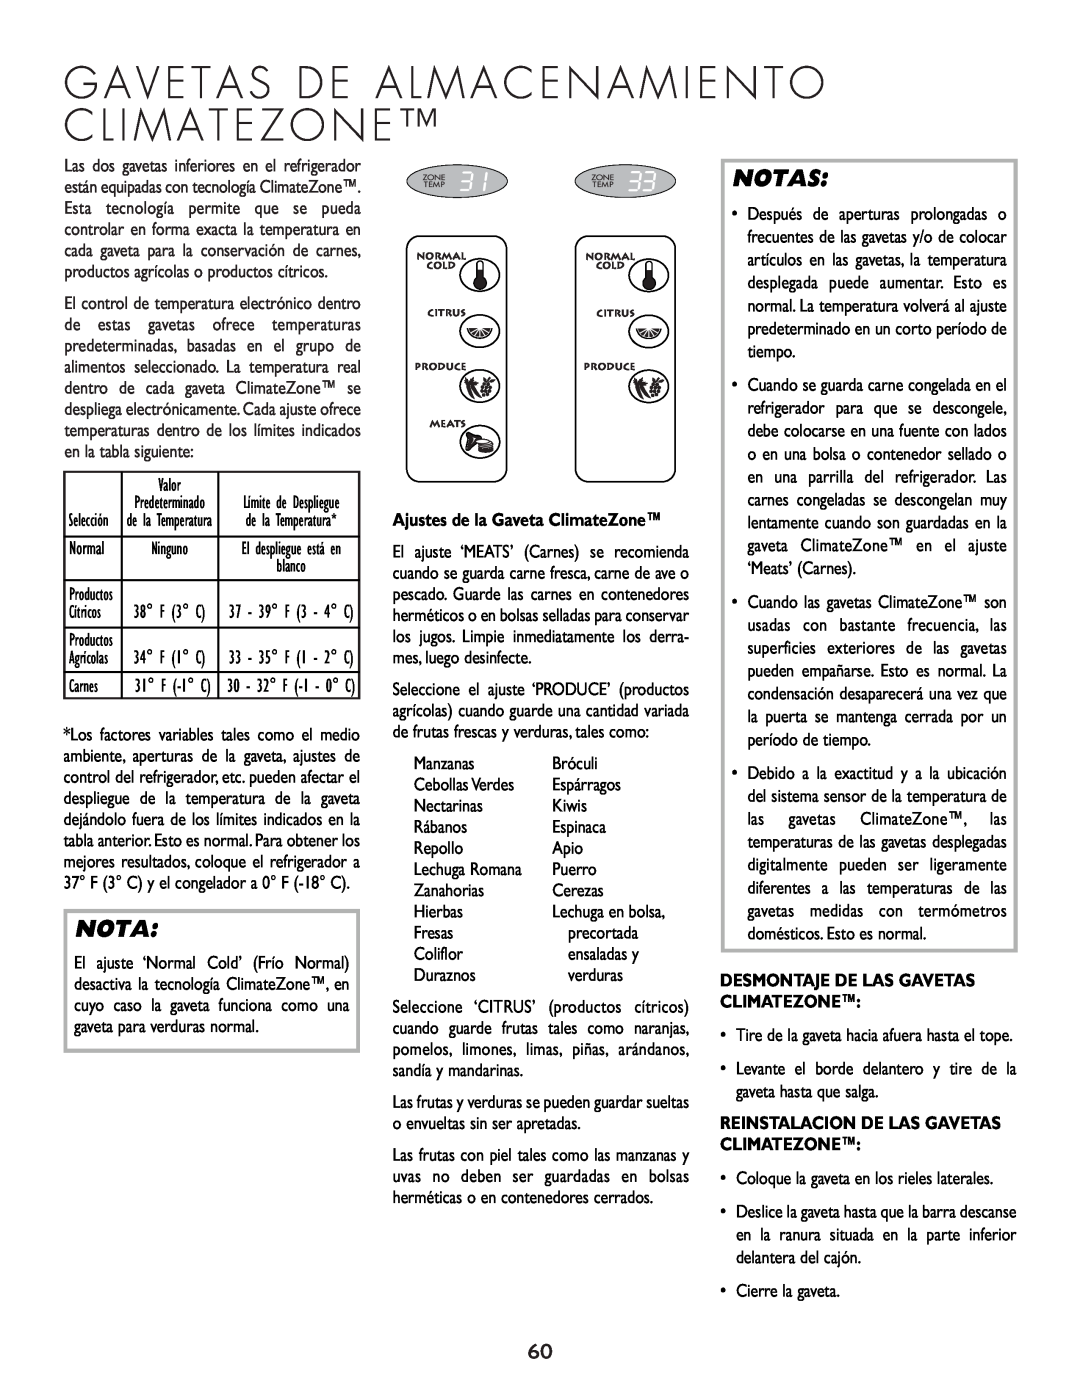 Cuno 111405-1 manual Notas, Desmontaje De Las Gavetas Climatezone, Reinstalacion De Las Gavetas Climatezone 